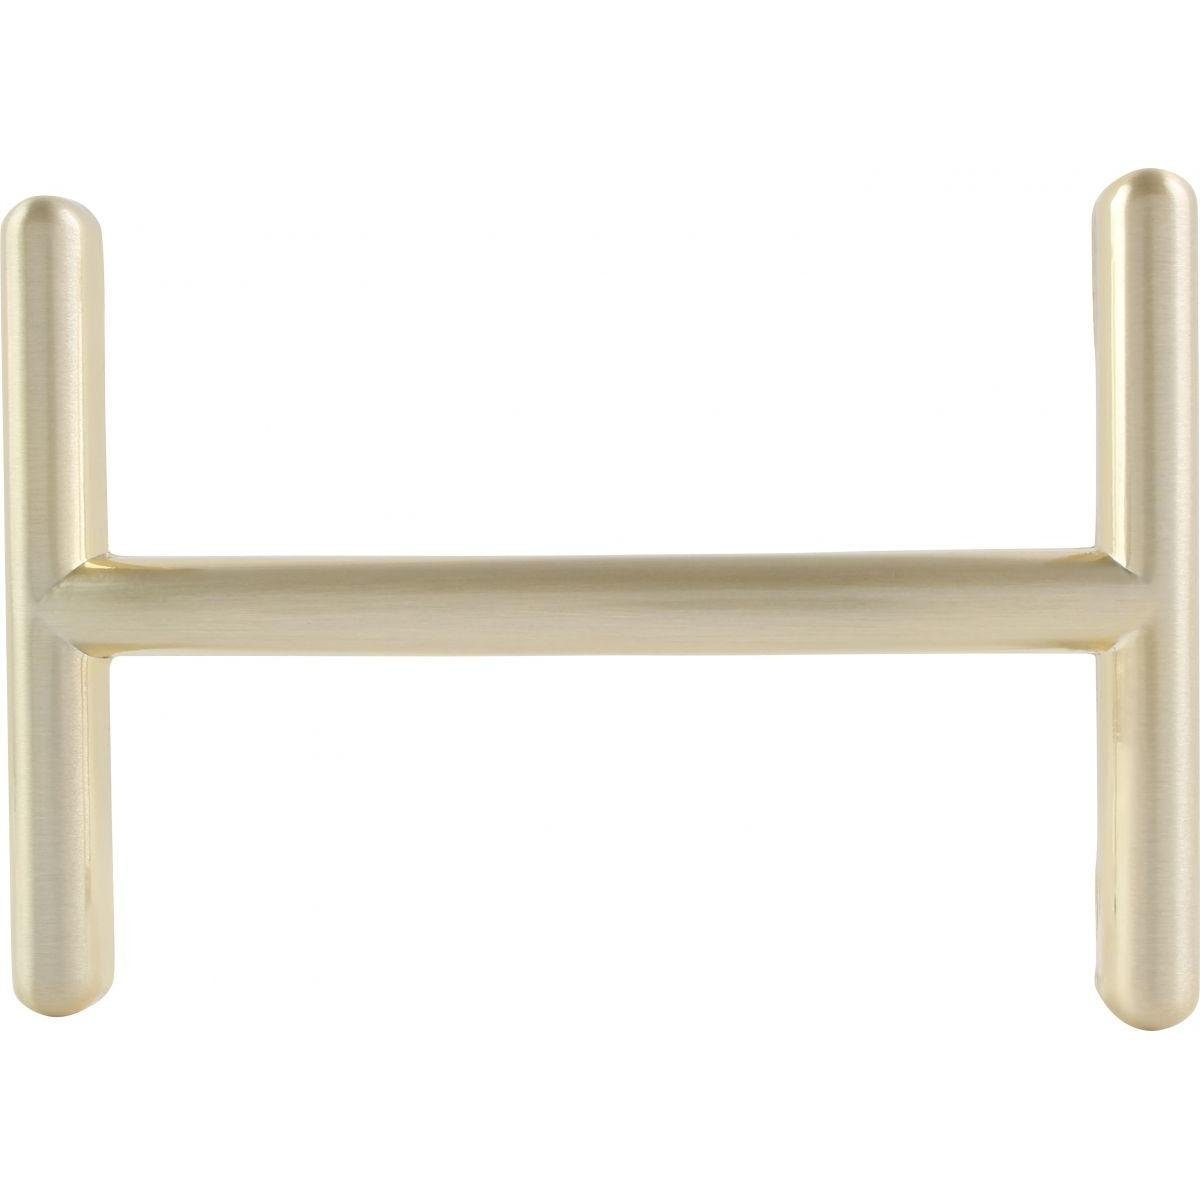 BELTINGER Gürtelschnalle Hekate 4,0 cm - Buckle Wechselschließe Gürtelschließe 40mm - Gürtel bi Gold matt